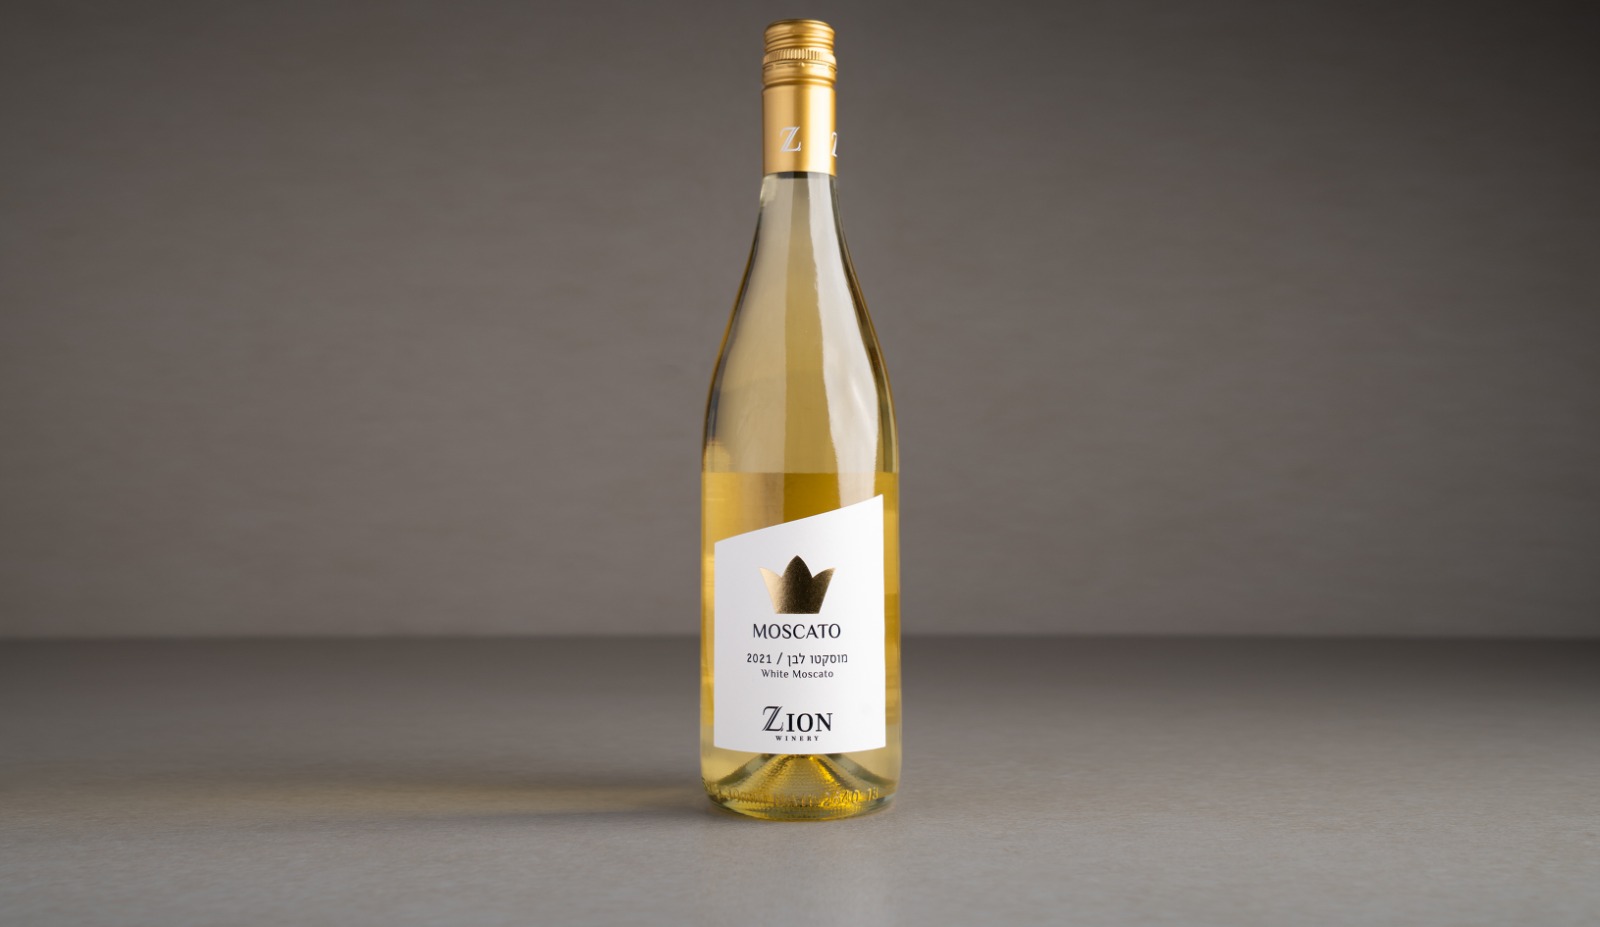 Sparkling white Moscato wine "Zion" 2021